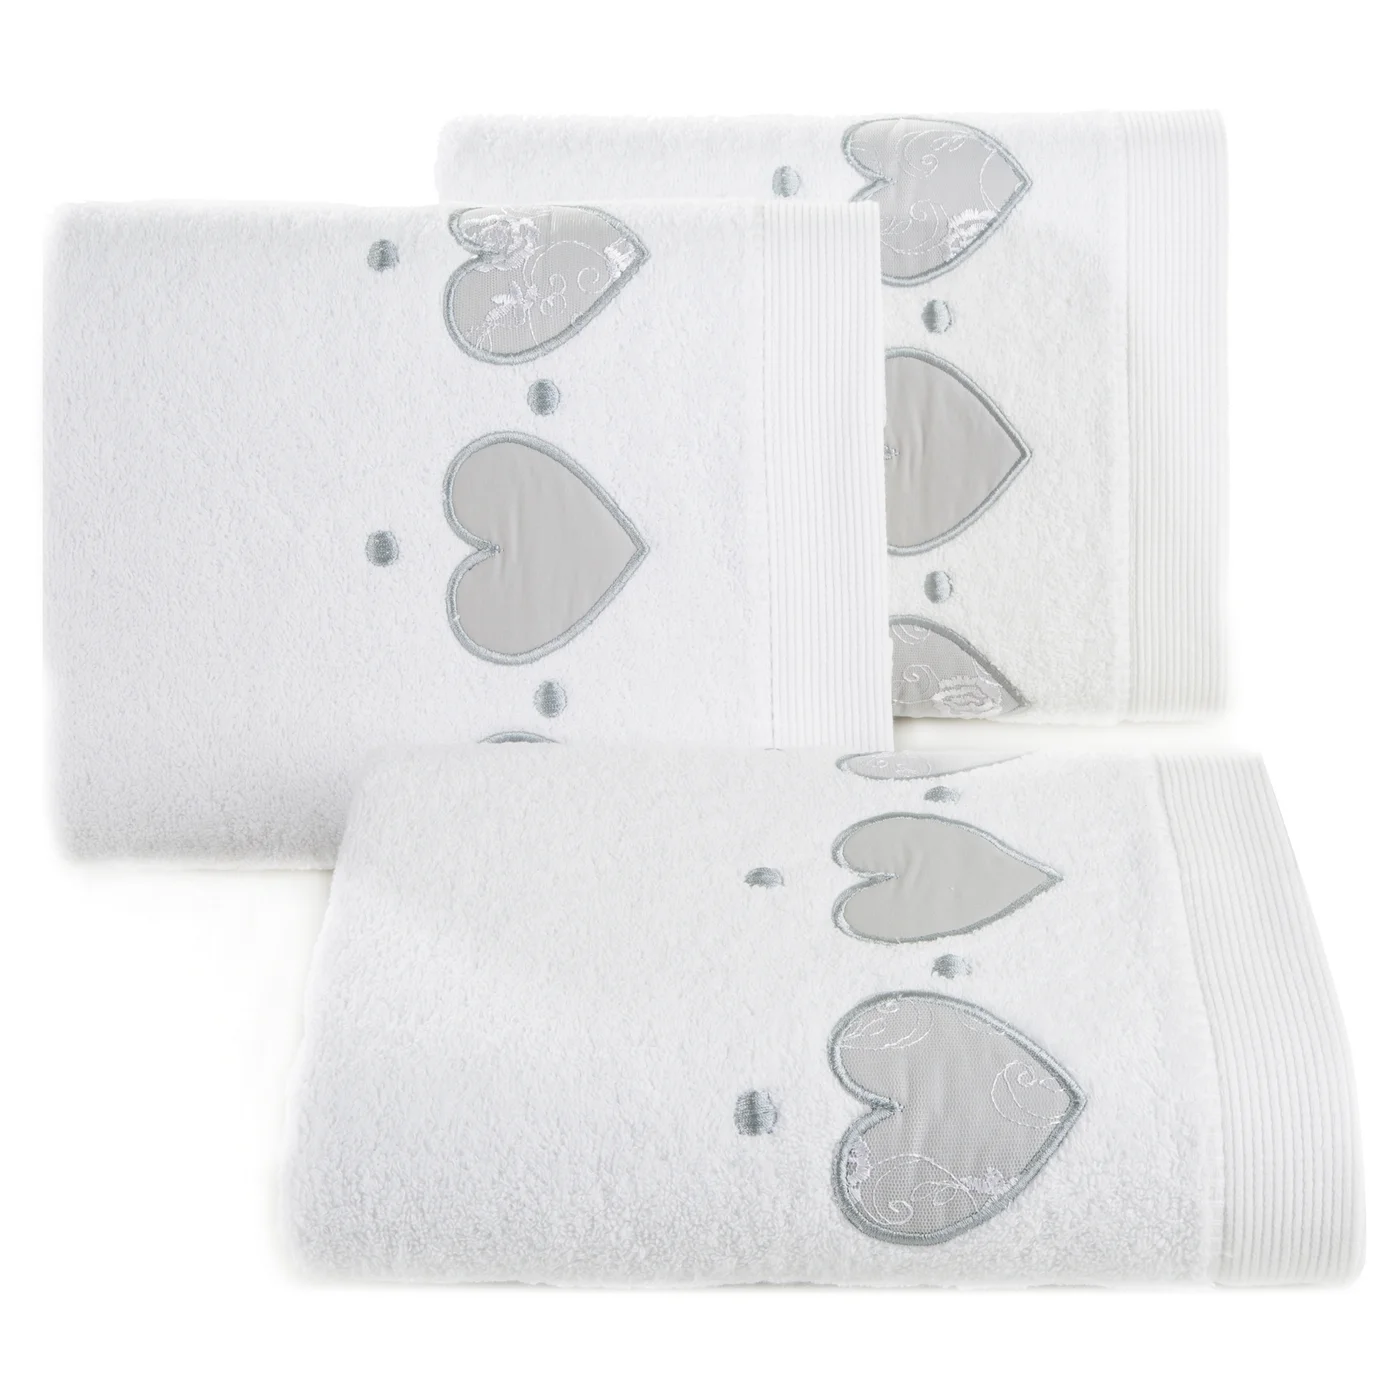 DESIGN 91 Ręcznik AGA z aplikacją z serduszkami i haftem